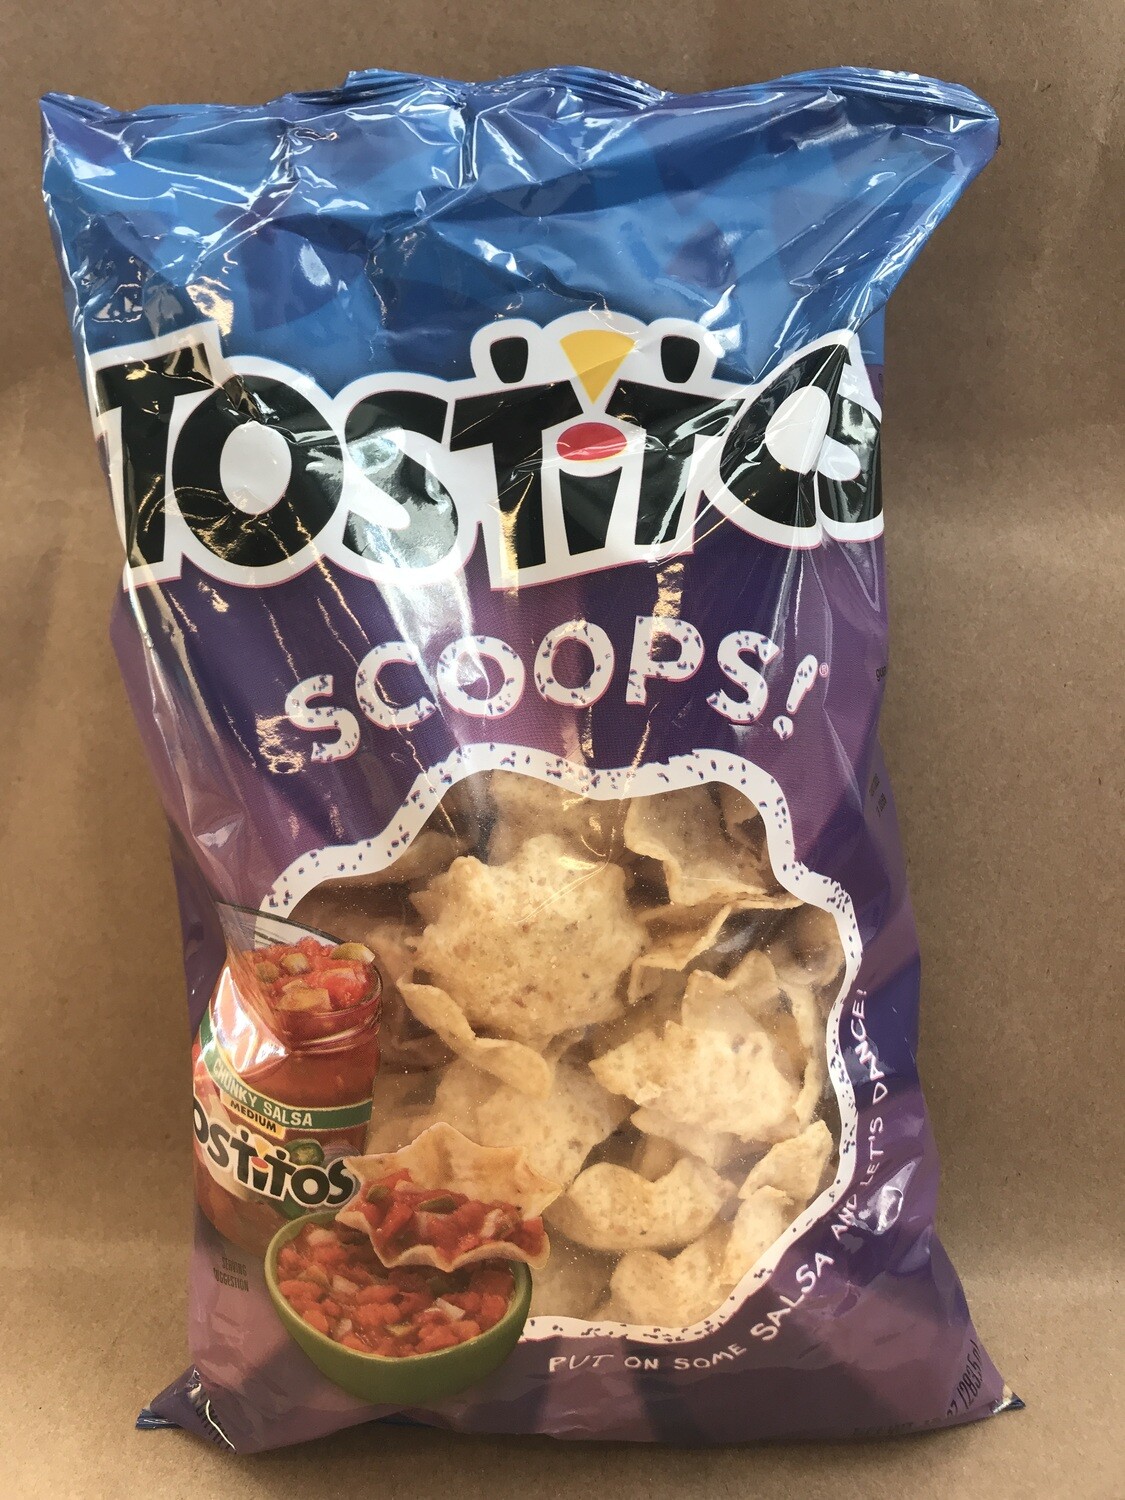 Chips / Big Bag / Tostitos Scoops 10 oz.